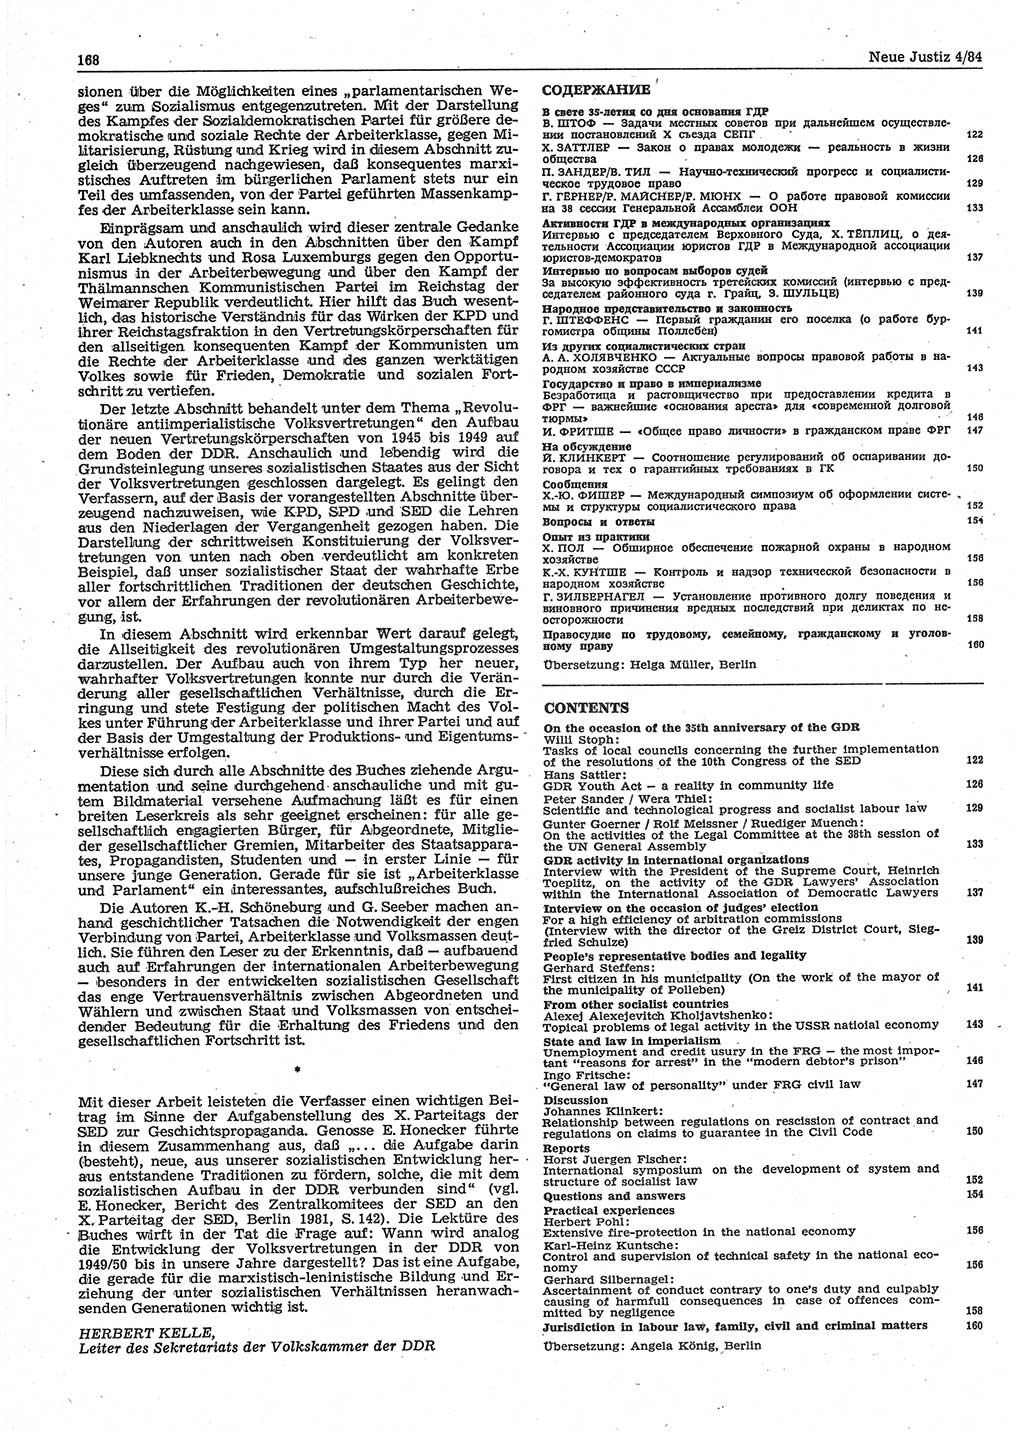 Neue Justiz (NJ), Zeitschrift für sozialistisches Recht und Gesetzlichkeit [Deutsche Demokratische Republik (DDR)], 38. Jahrgang 1984, Seite 168 (NJ DDR 1984, S. 168)